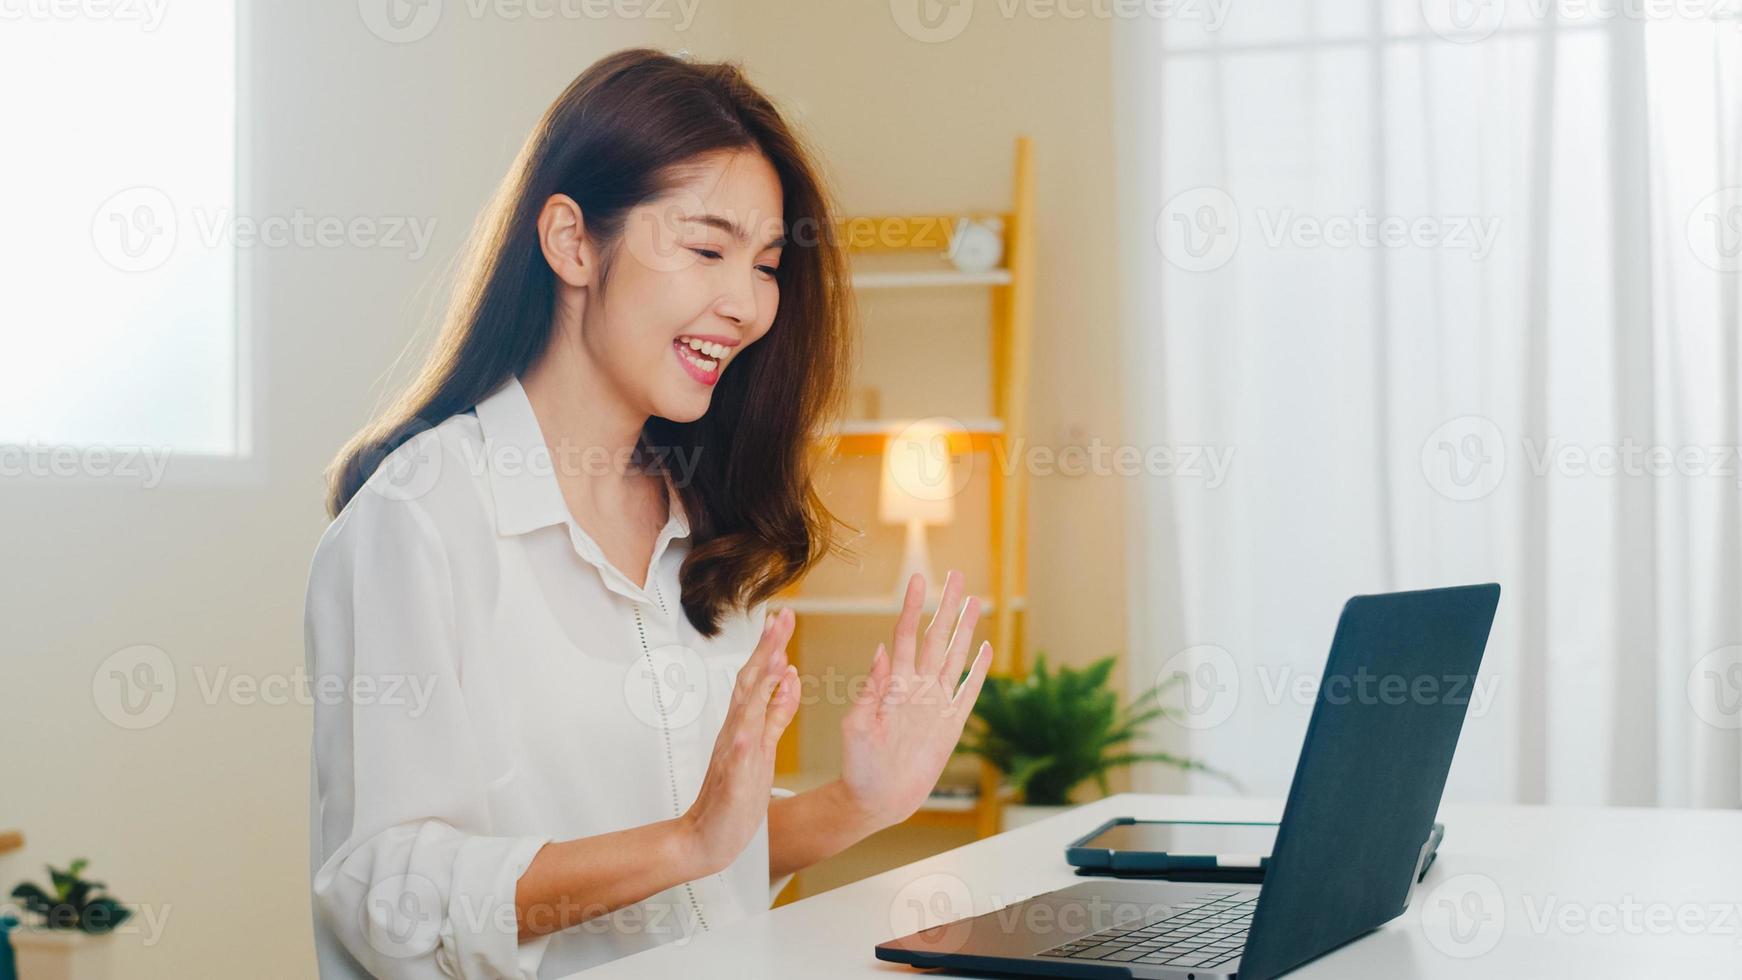 jonge Aziatische zakenvrouw die laptop videogesprek gebruikt om met een paar te praten terwijl ze vanuit huis in de woonkamer werkt. zelfisolatie, sociale afstand, quarantaine voor coronavirus in het volgende normale concept. foto